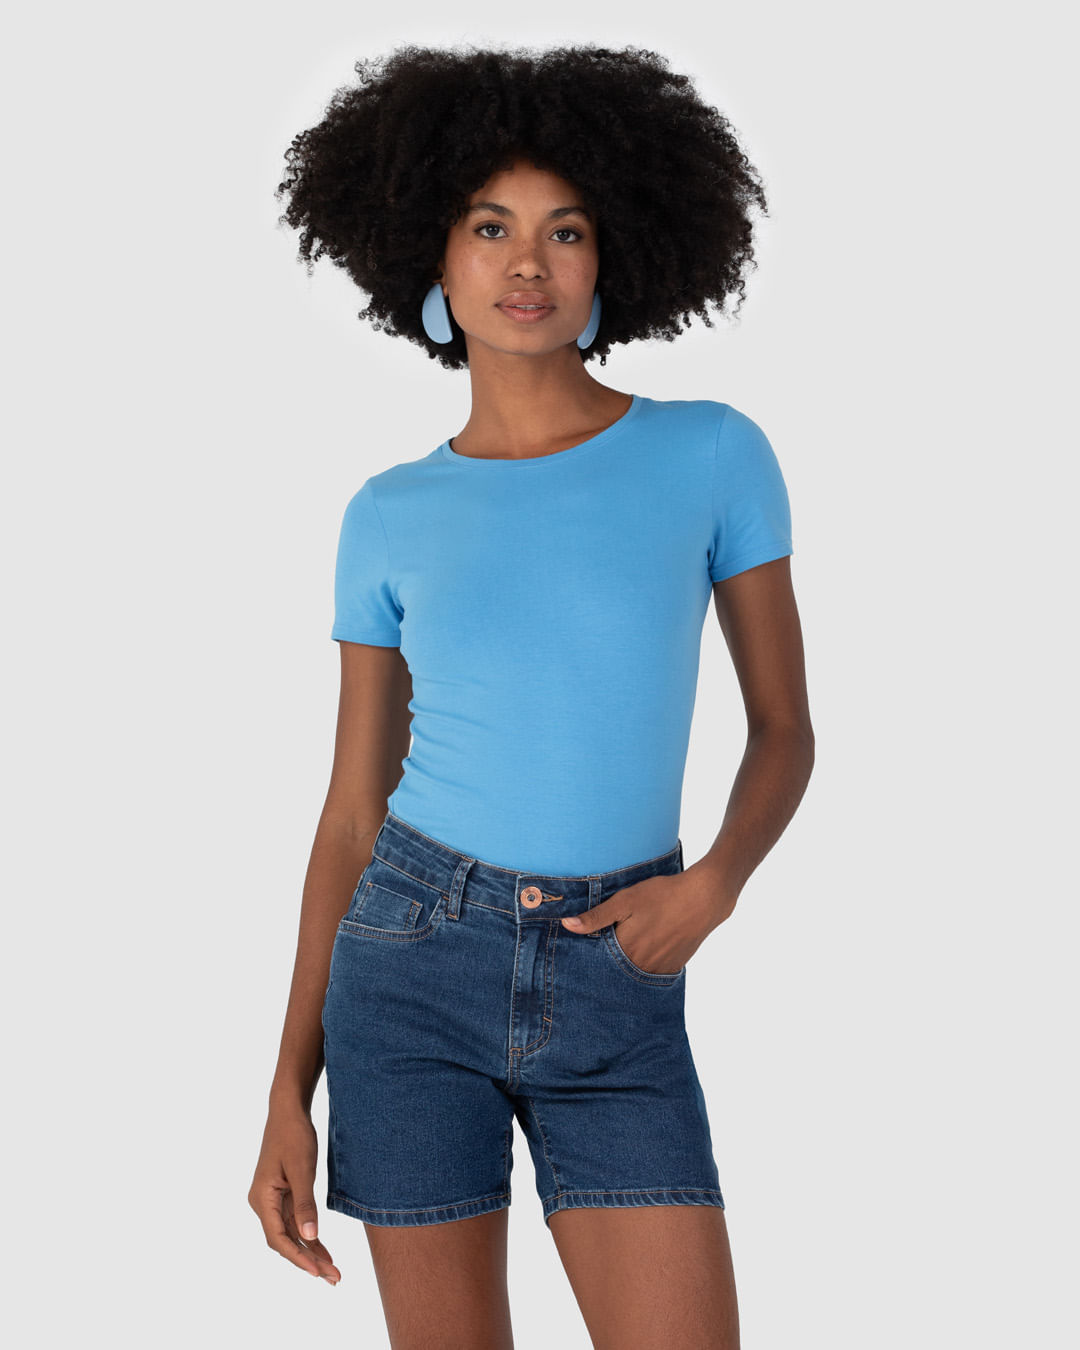 Blusa Básica Feminina Decote Redondo Em Algodão Azul - XGG - Malwee